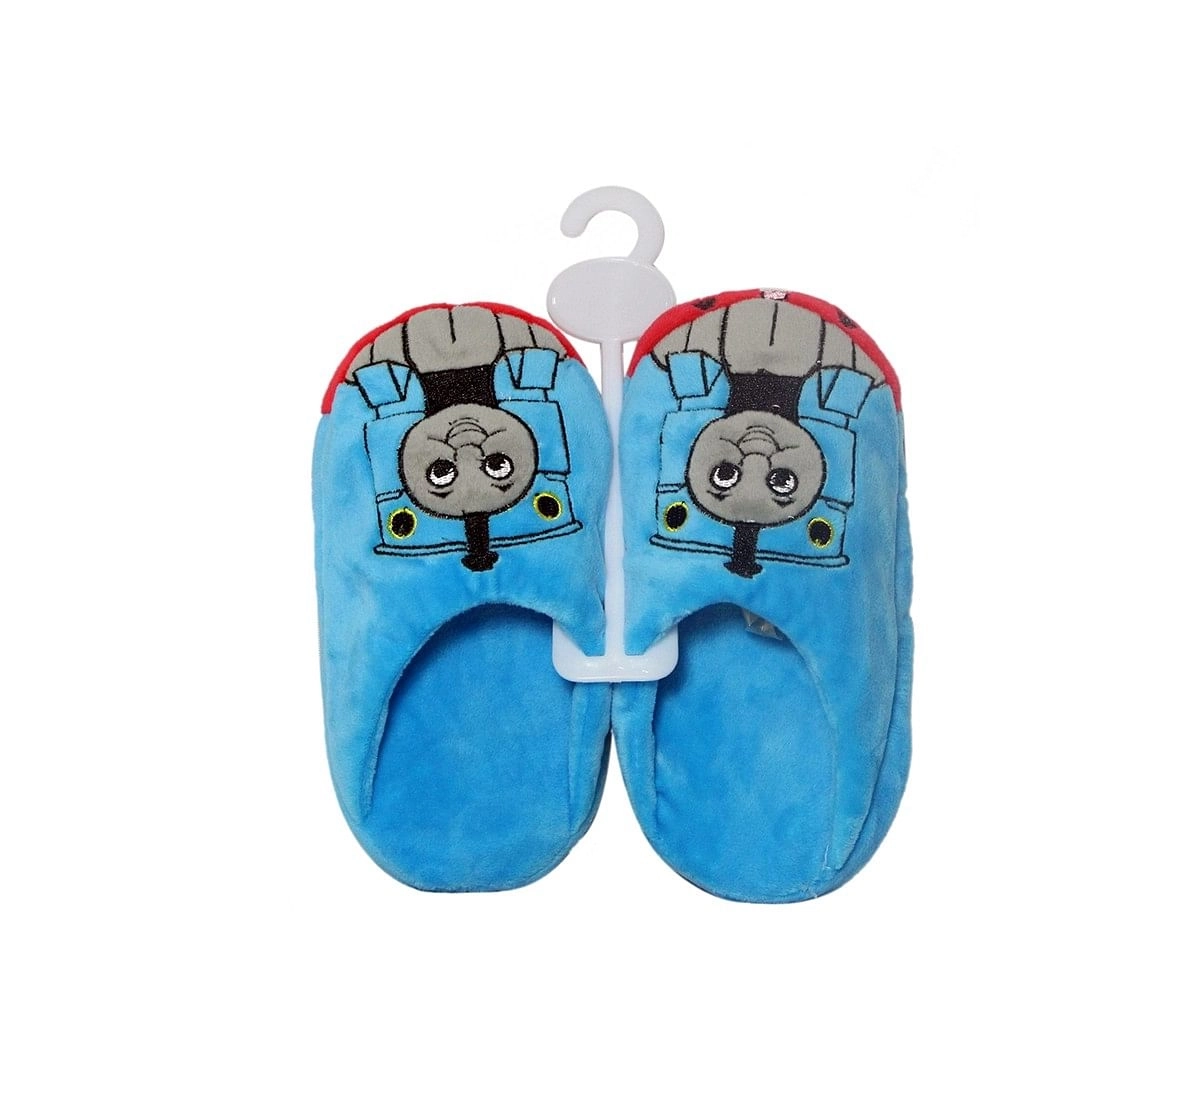 Thomas & Friends Flip Flop Medium Plush Accessories for Kids age 12M+ - 7.62 Cm 